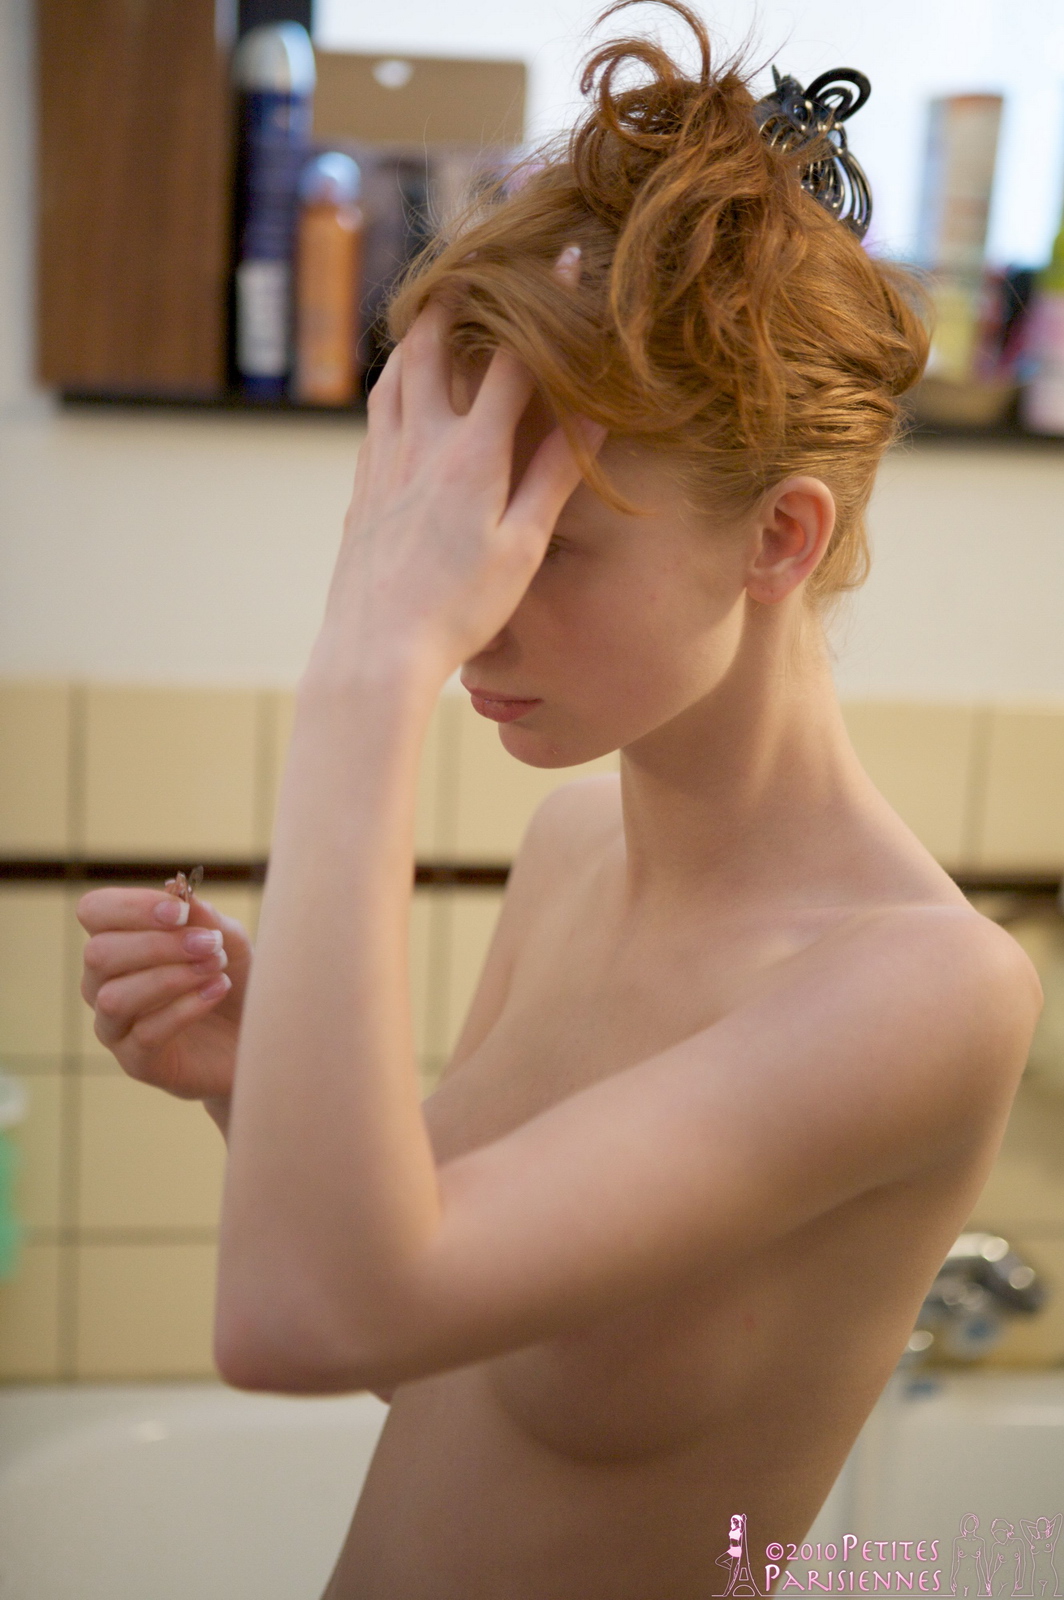 juliette-redhead-in-bathroom-nude-petites-parisiennes-03